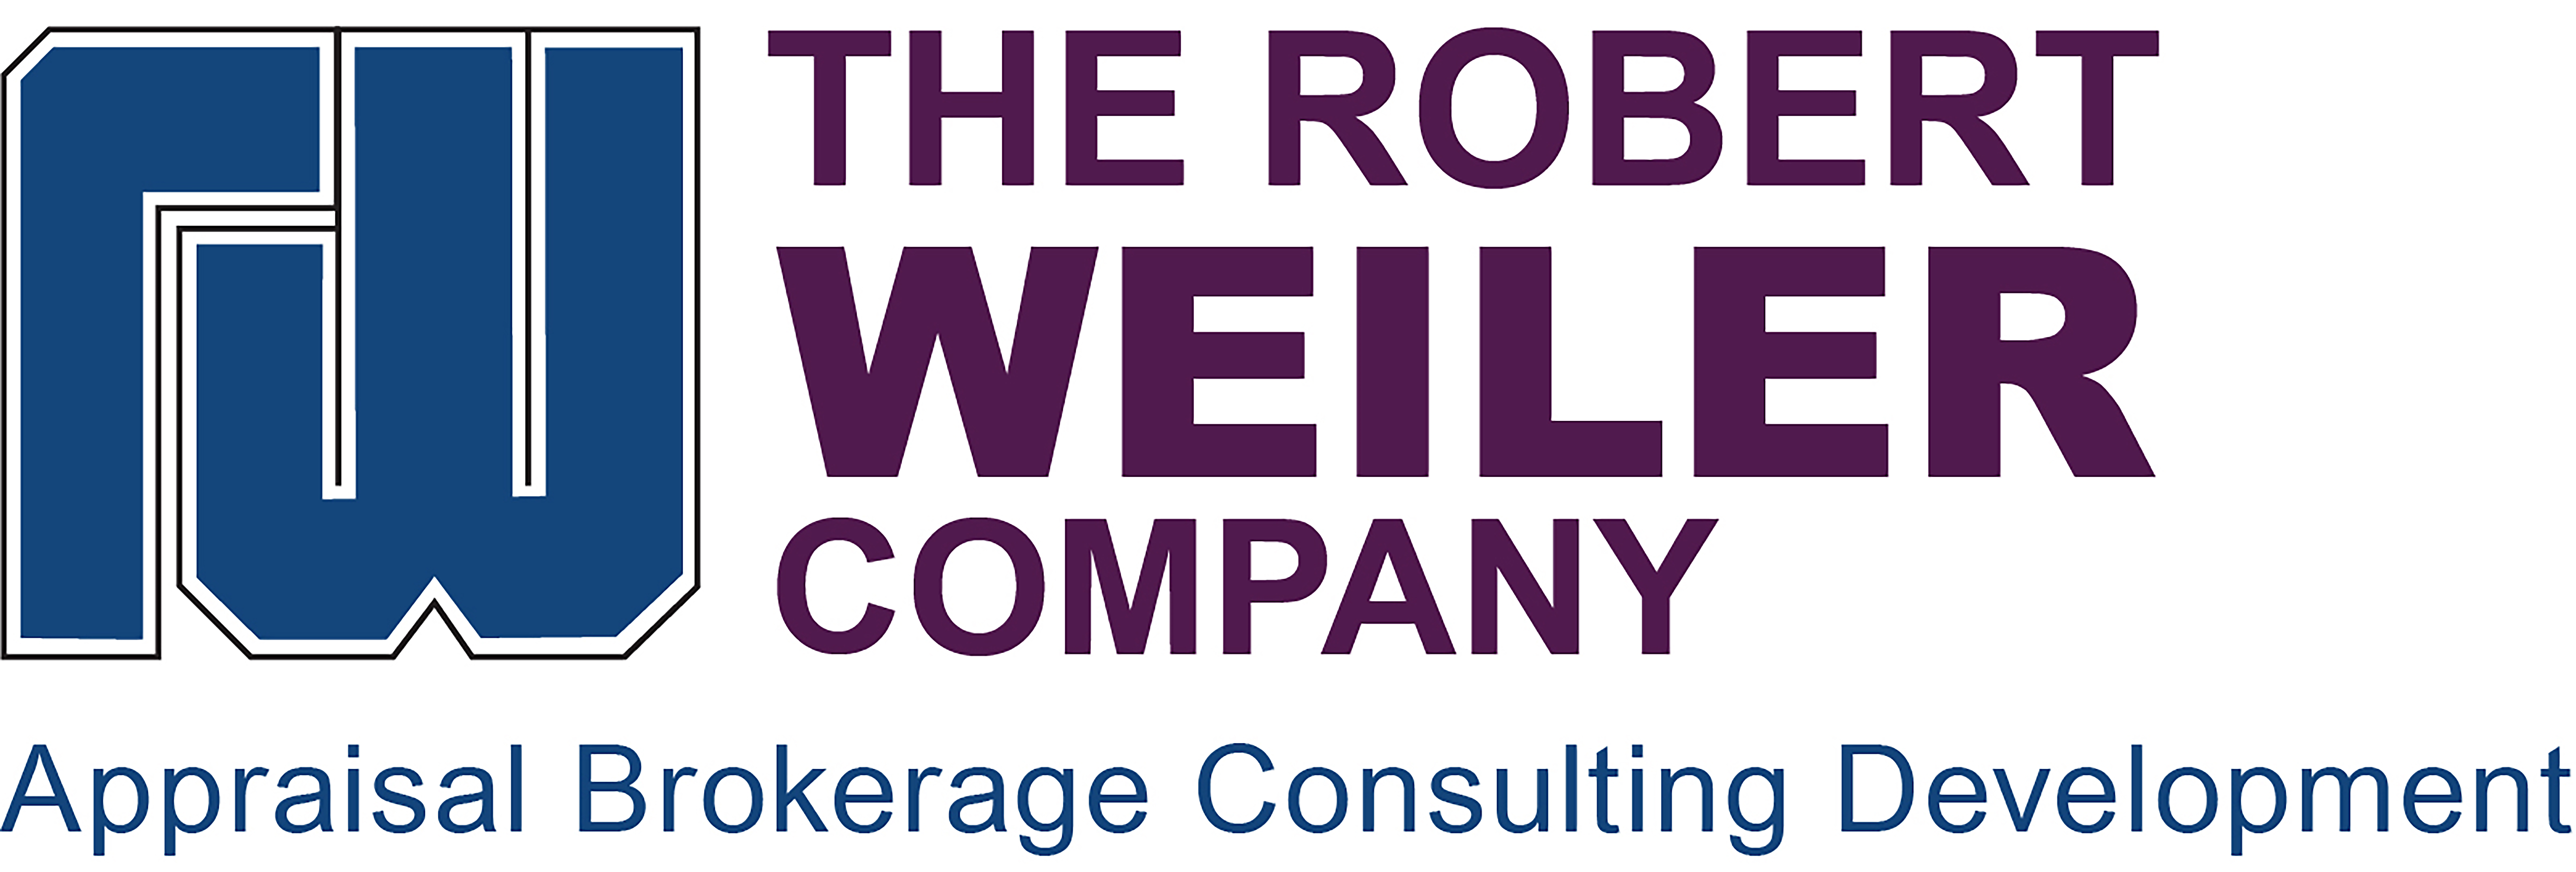 The Robert Weiler Company